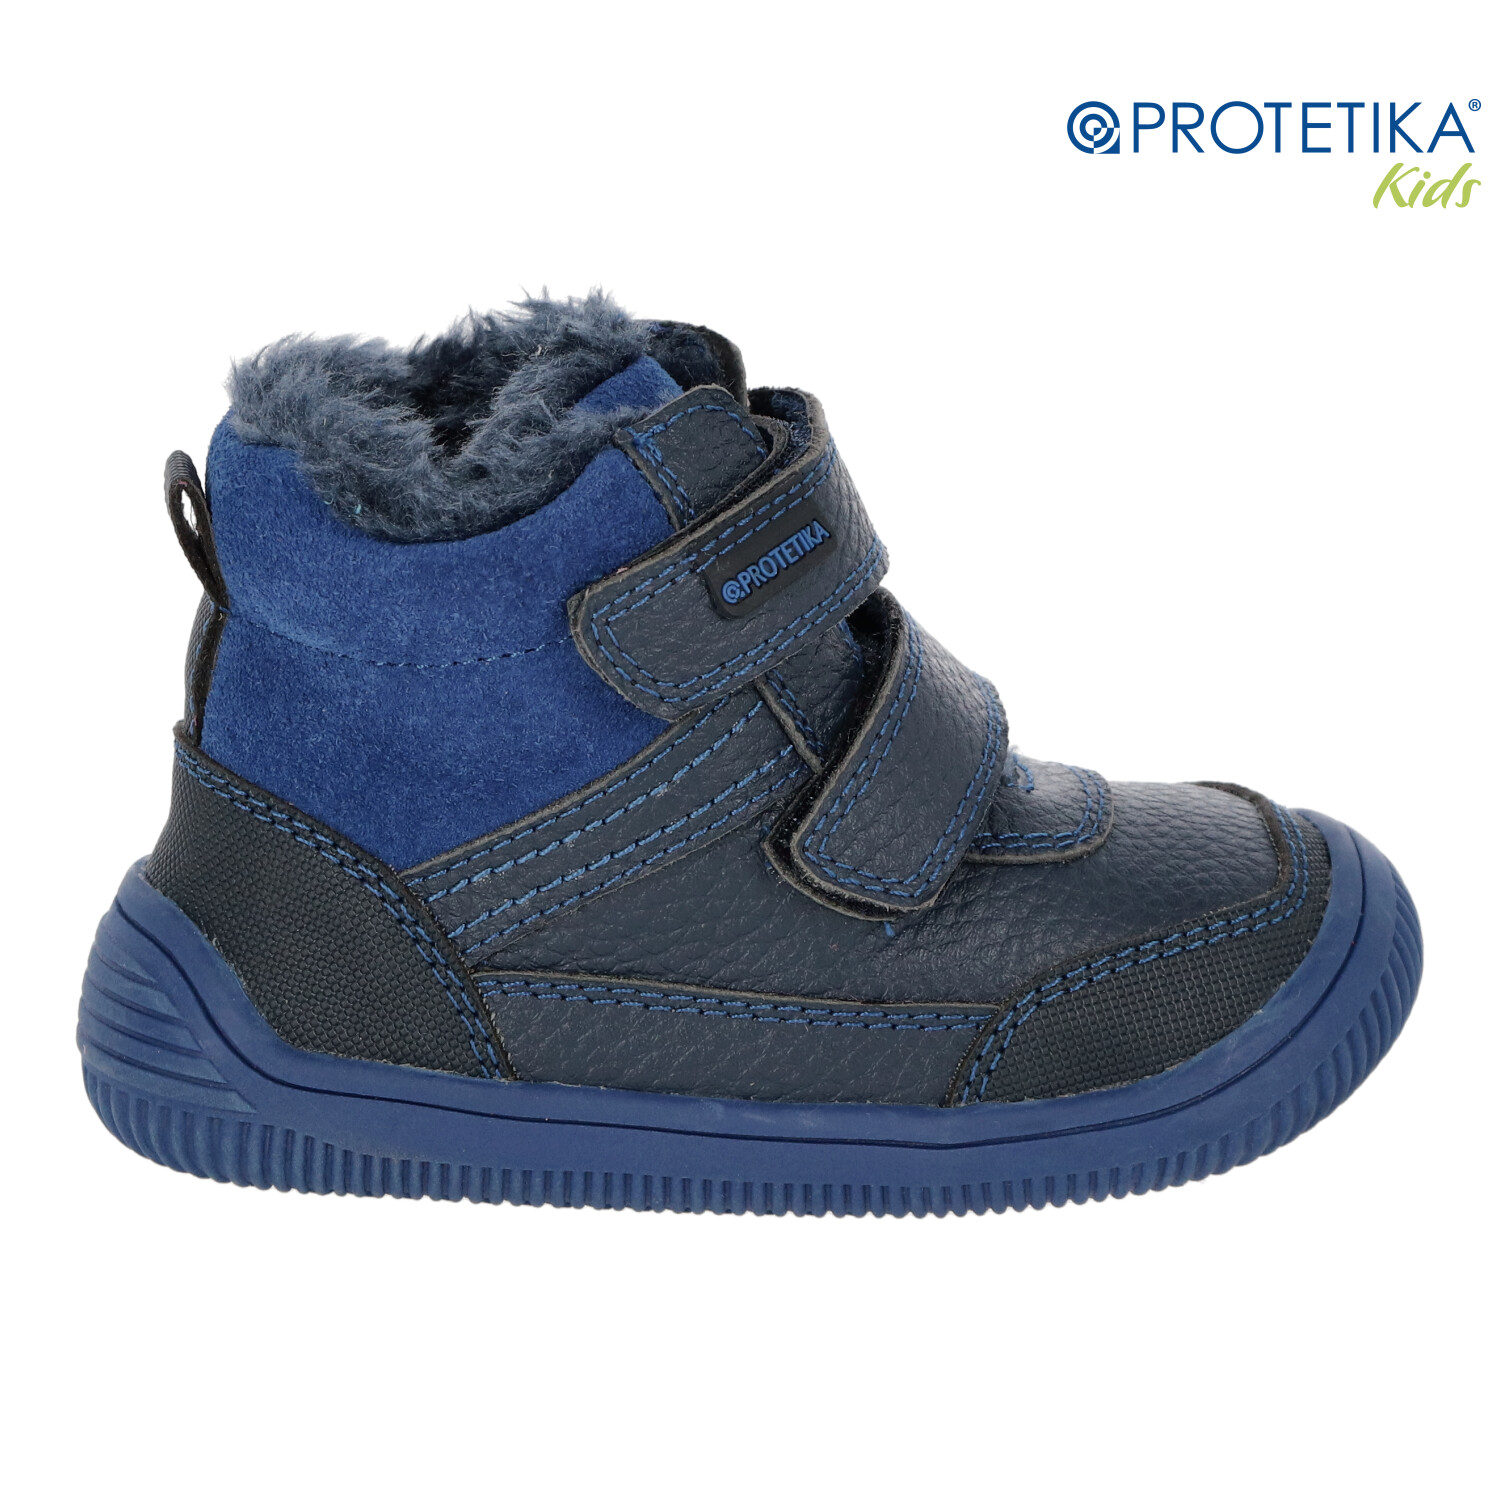 Protetika - zimné barefootové topánky TYREL blue - zateplené kožušinkou